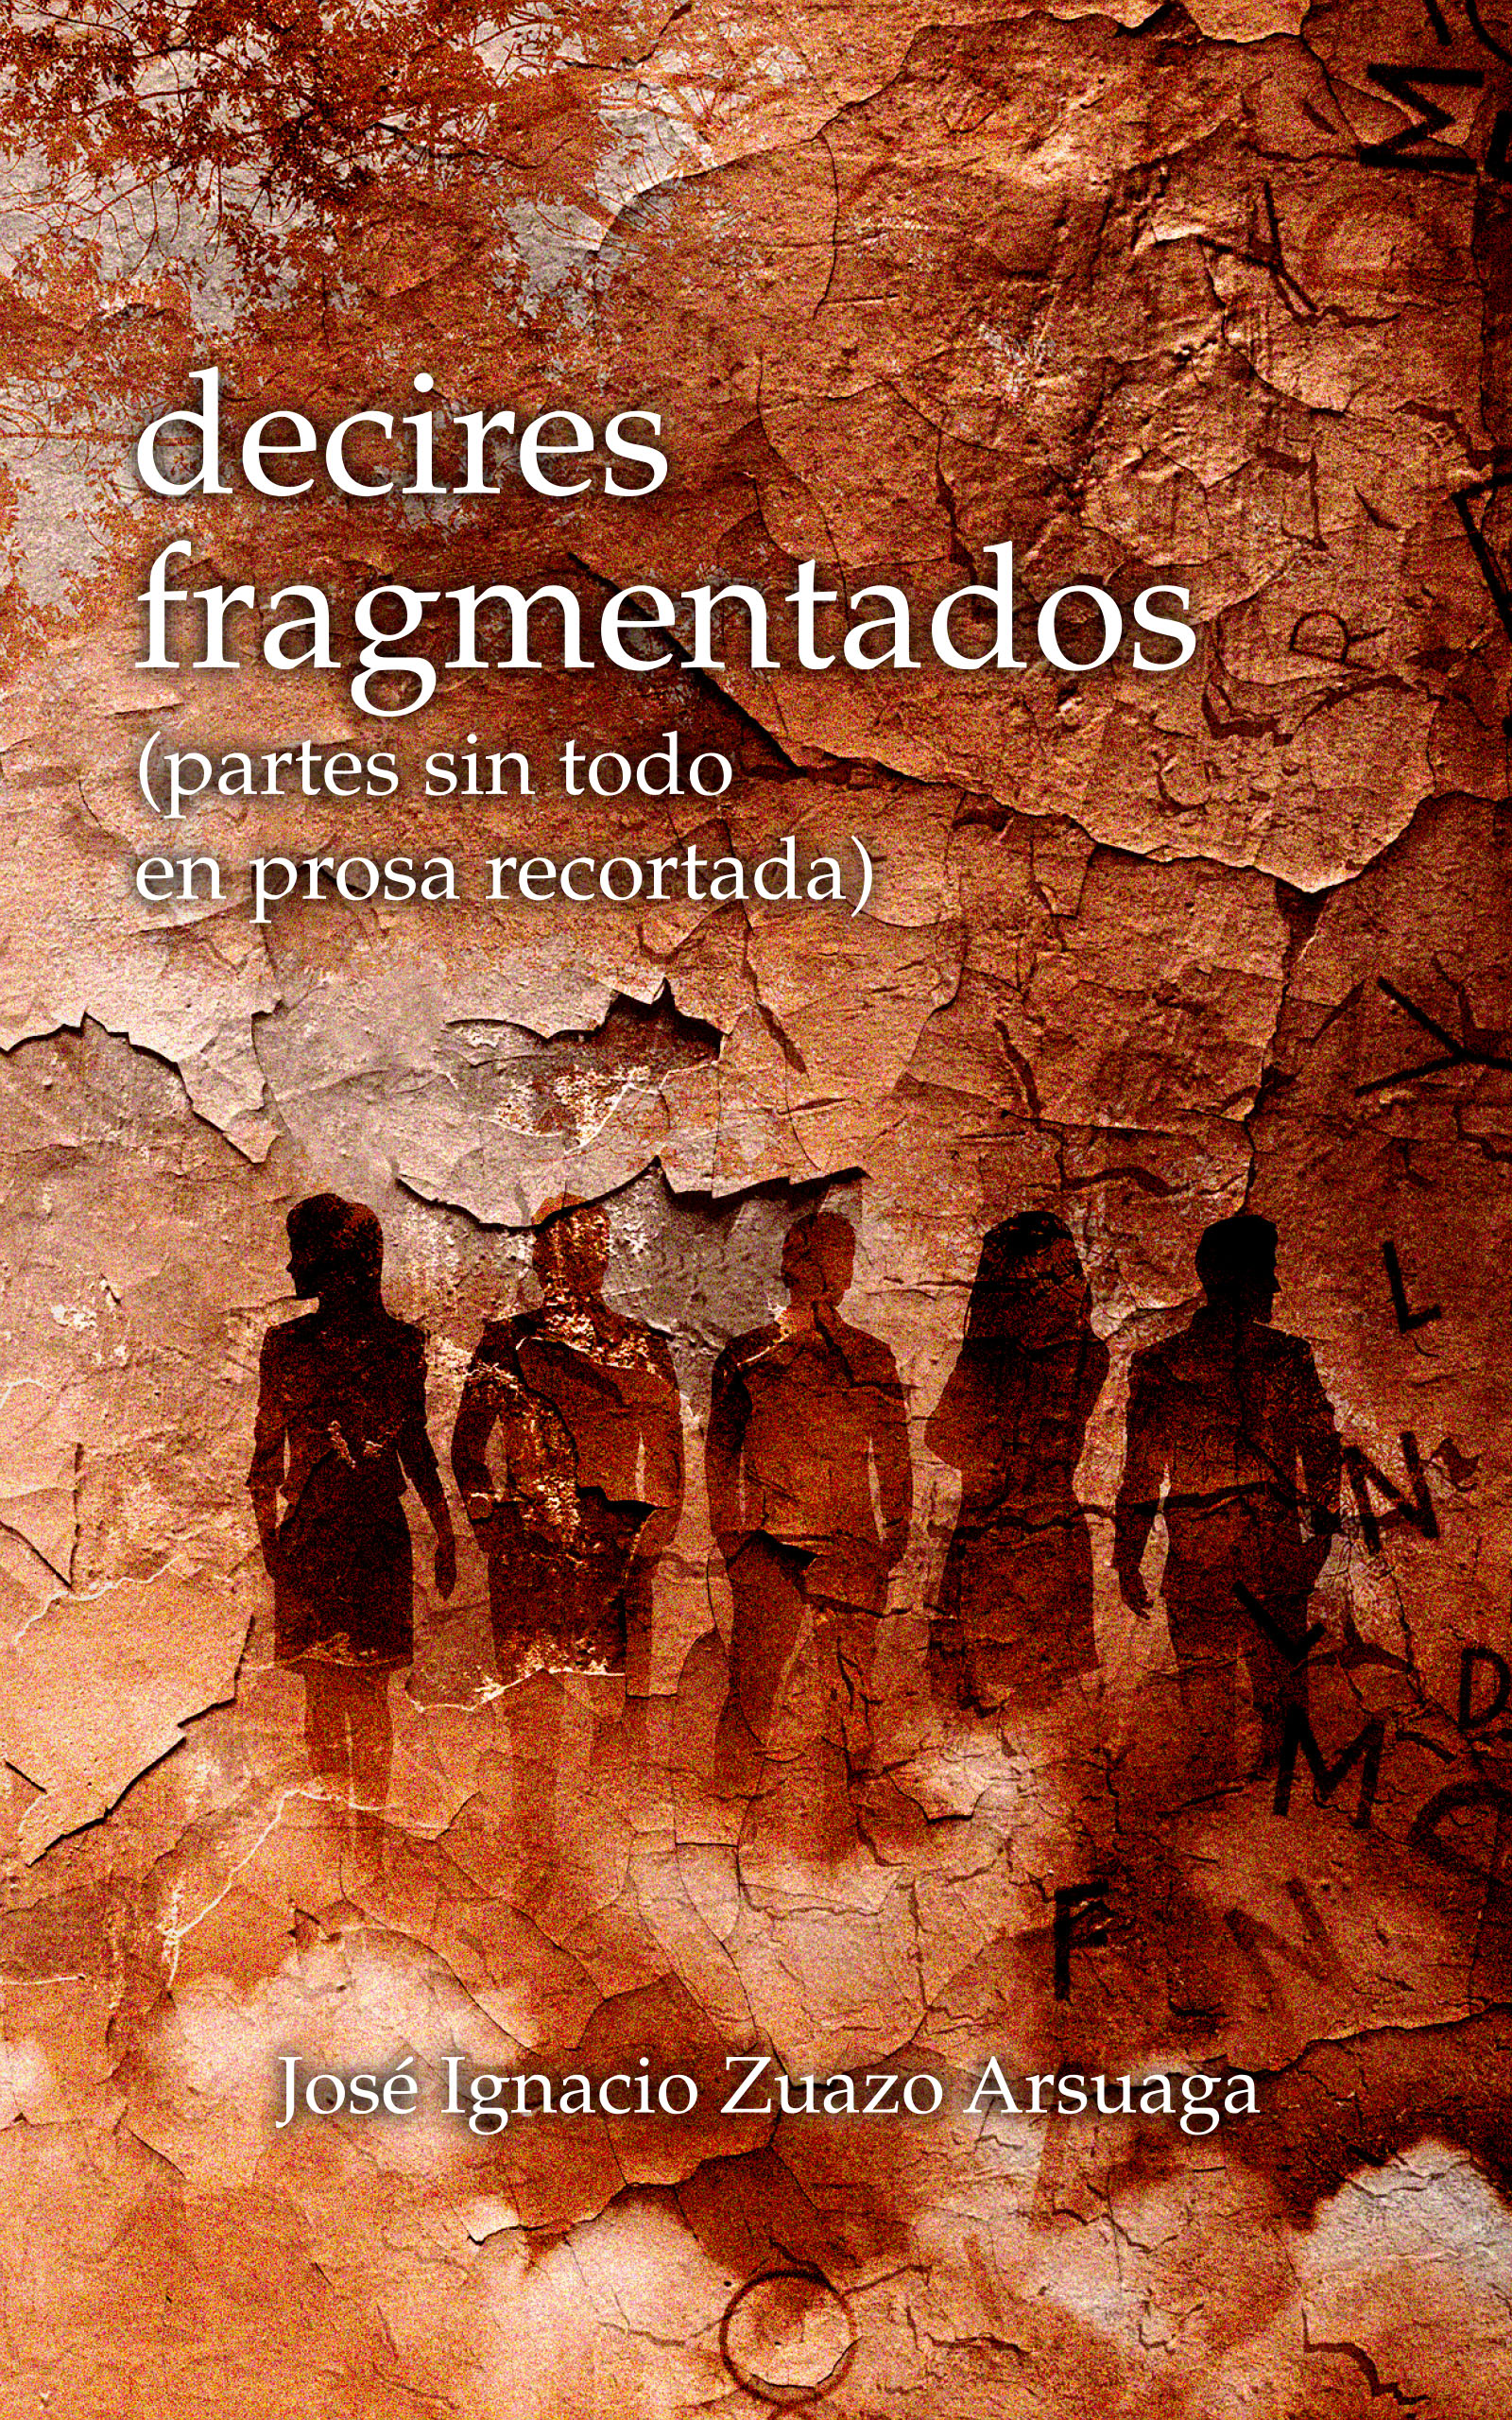 decires fragmentados, de José Ignacio Zuazo Arsuaga